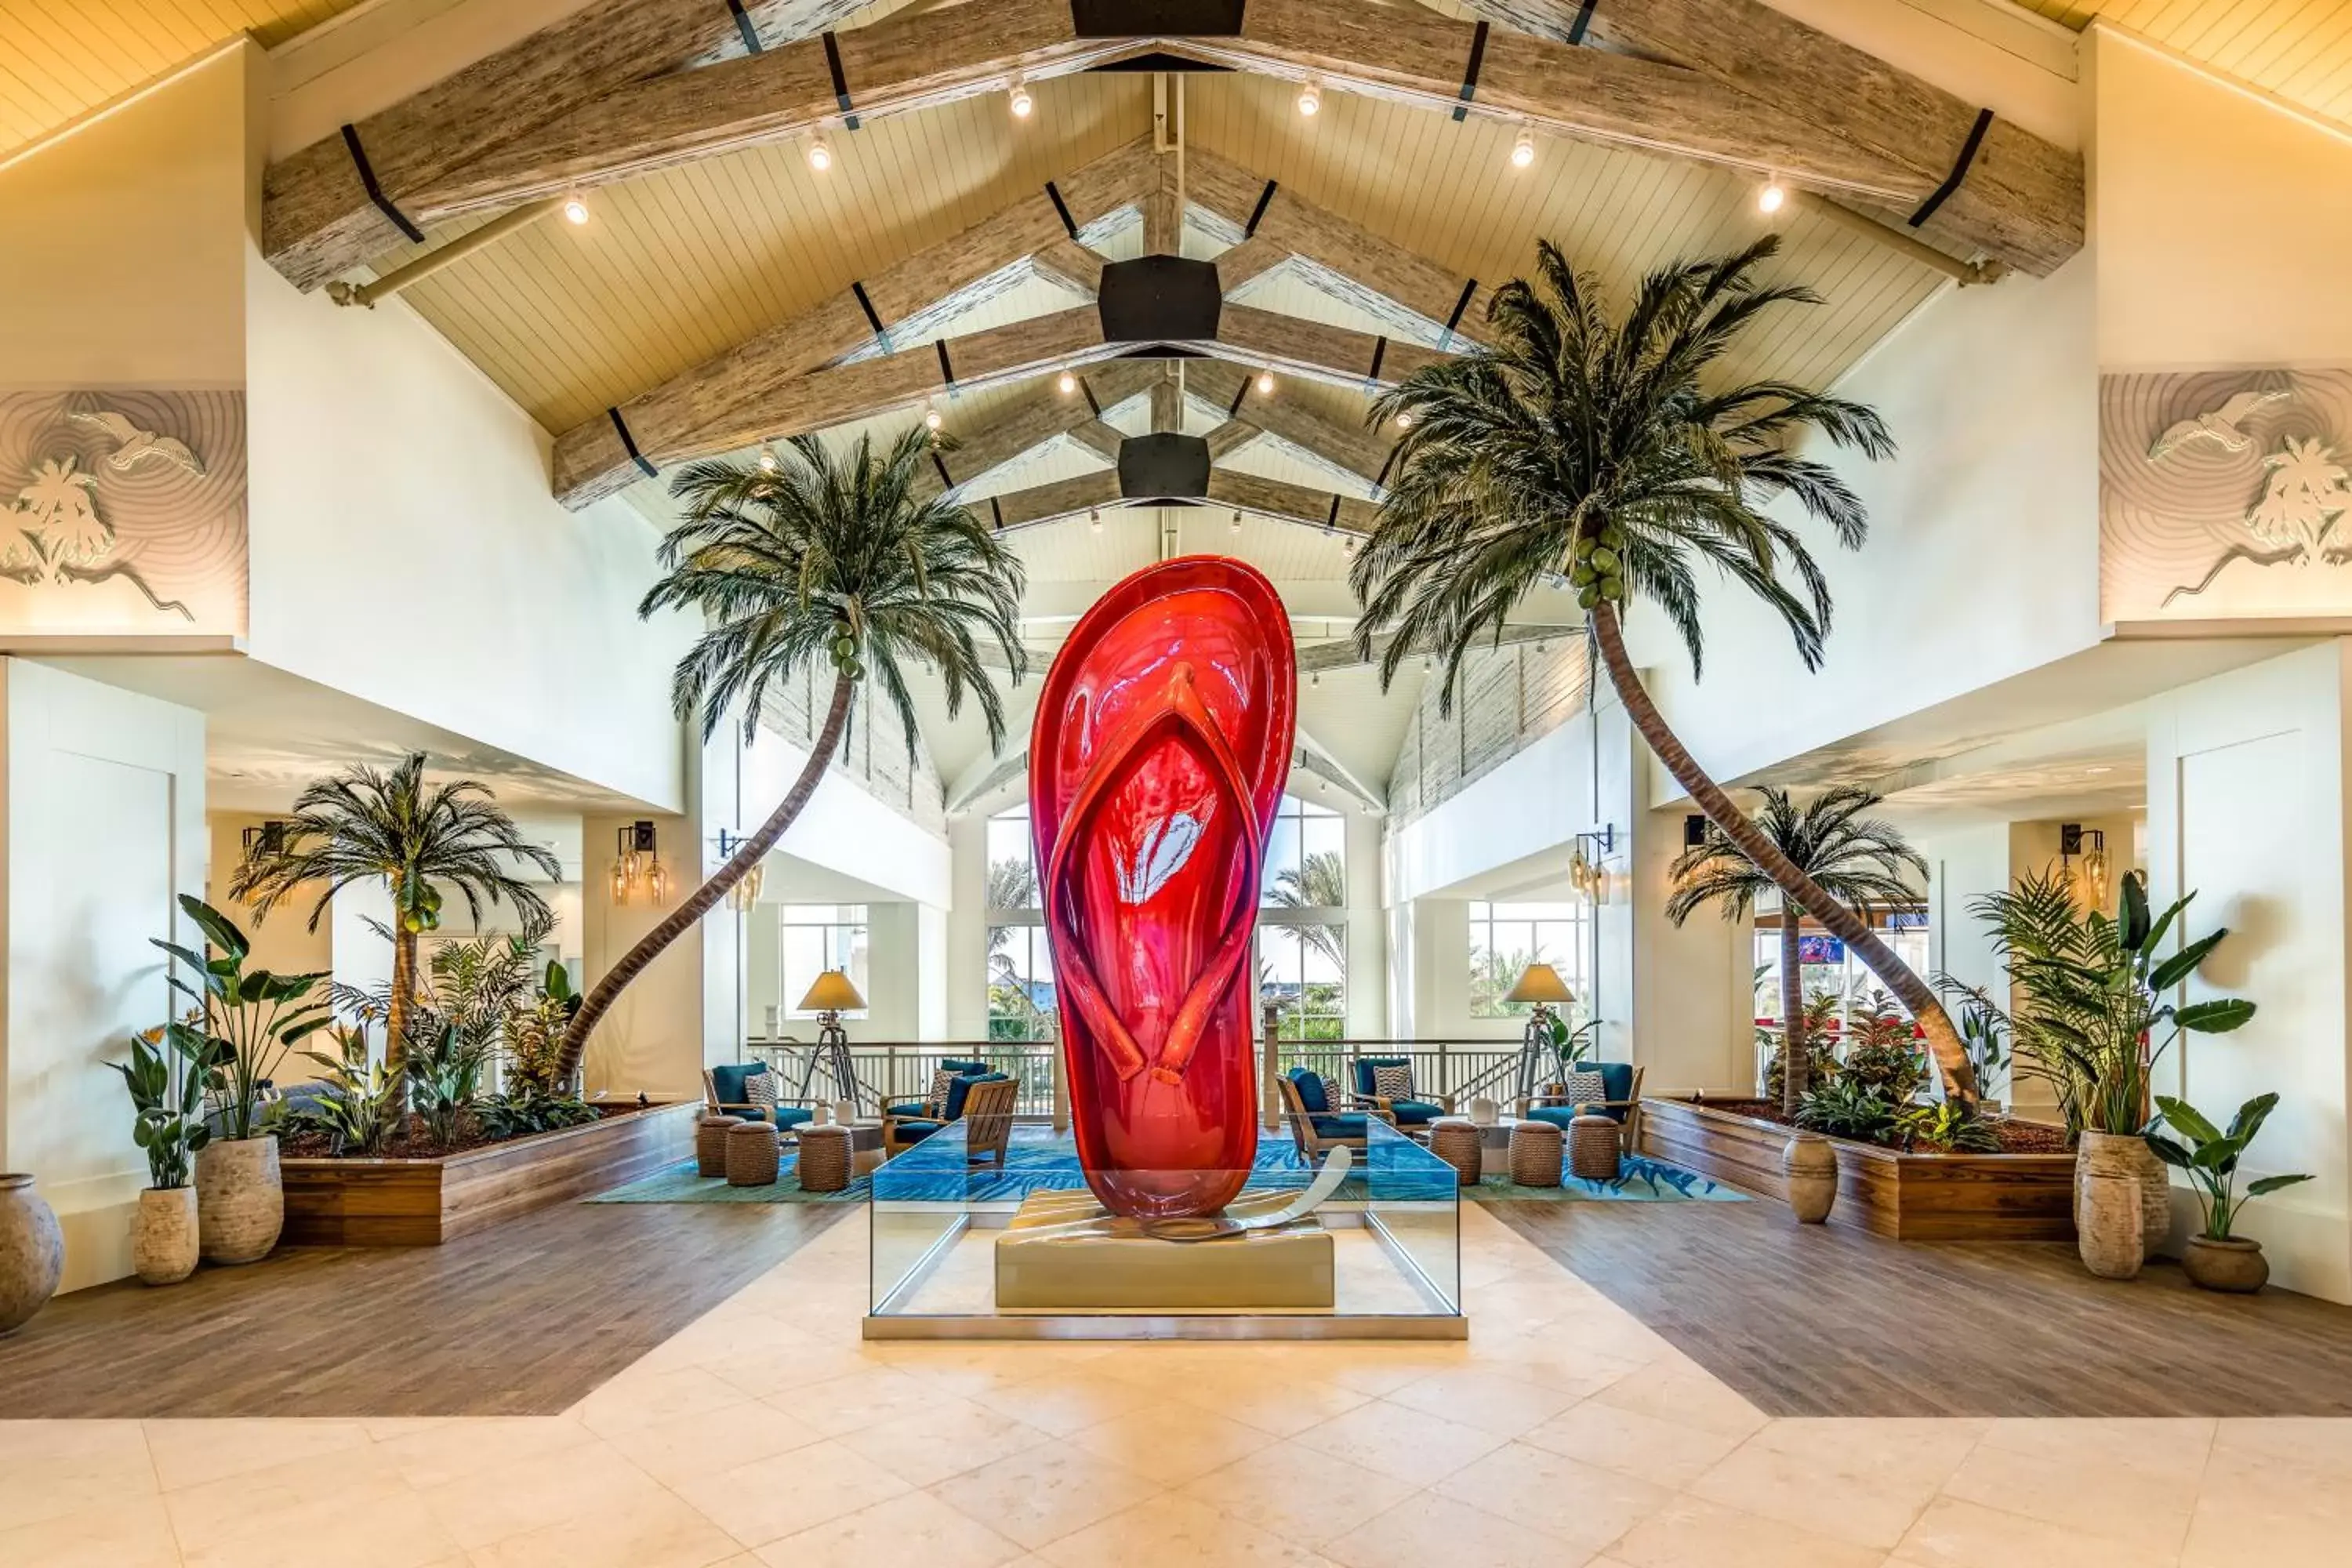 Lobby or reception, Lobby/Reception in Margaritaville Resort Orlando